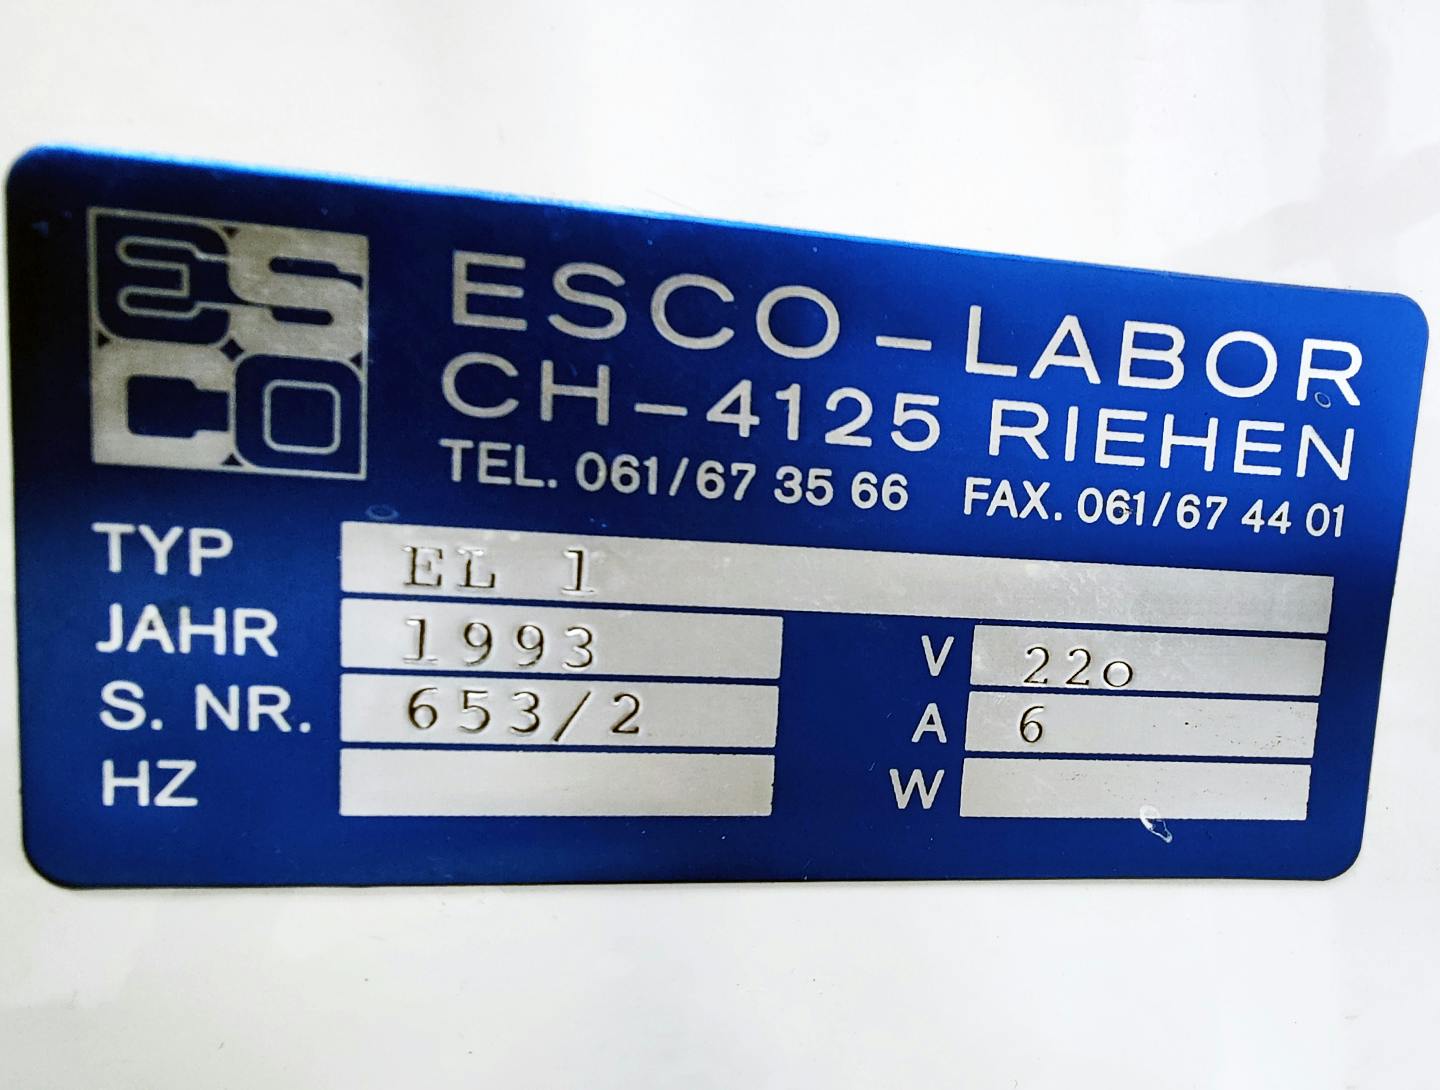 Esco Labor EL1 - Processing vessel - image 11